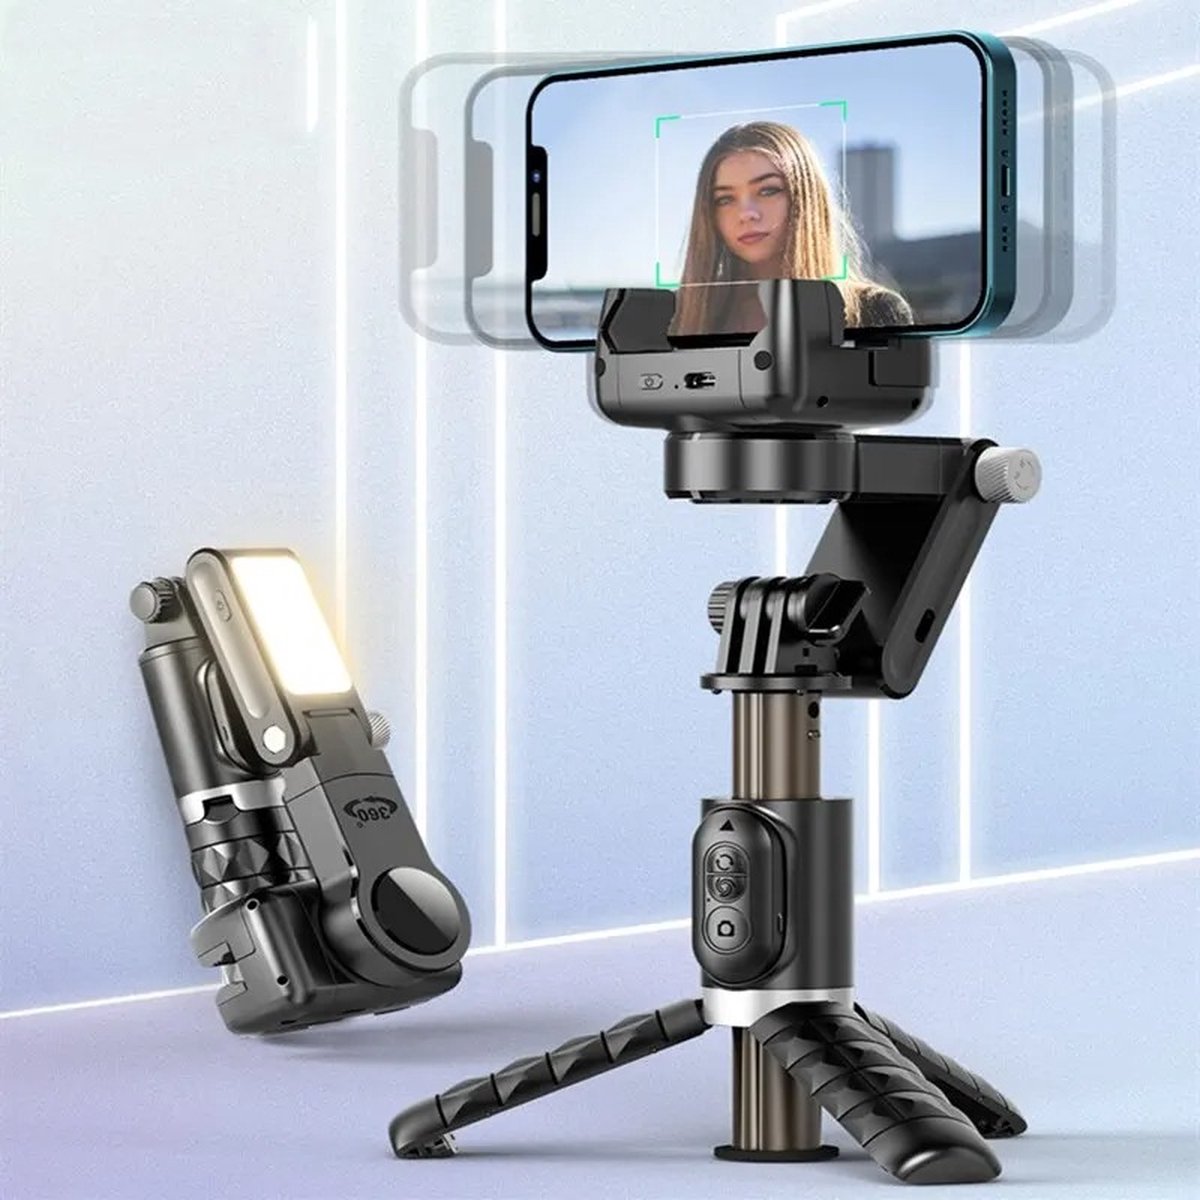 Axnen Selfie Stick Statief - Tripod - Selfiestick Iphone - Selfiesticks - Selfiestick Iphone - Selfiestick Universeel - Selfie Stick Samsung - 360 Rotatie - Selfie Stick - Statief Gimbal